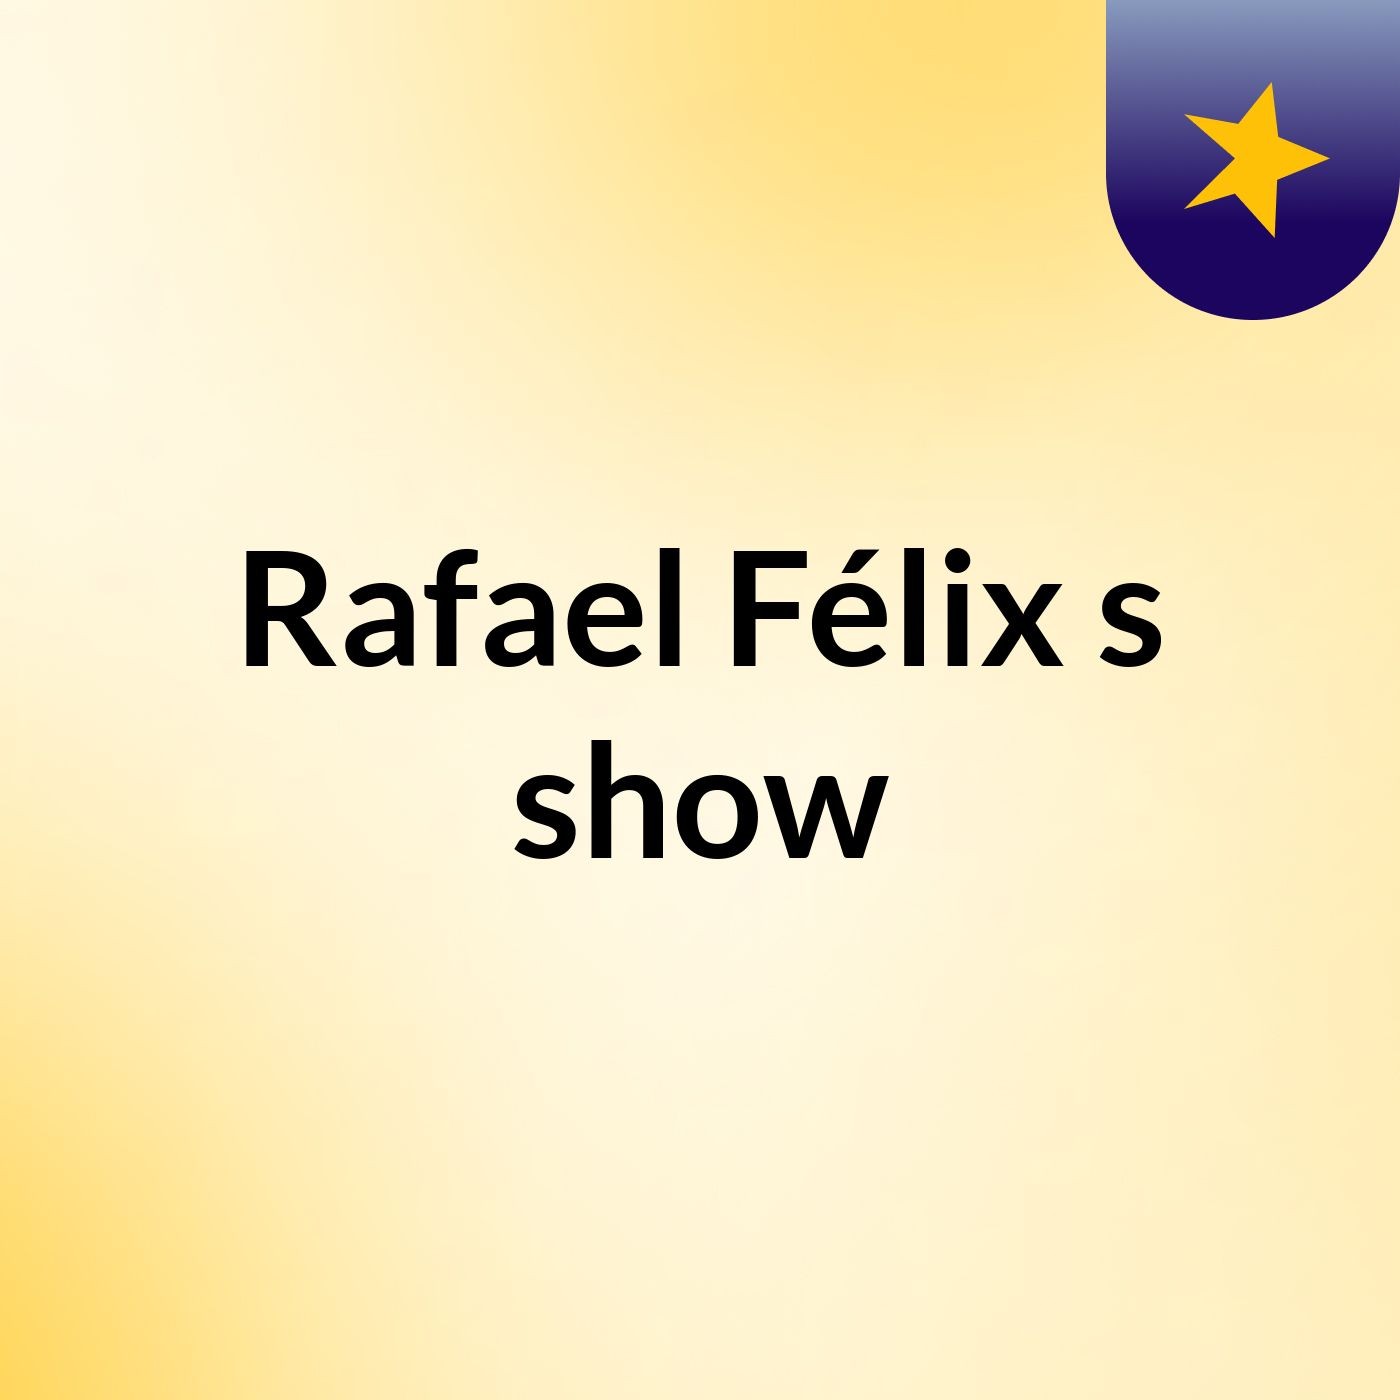 Rafael Félix's show